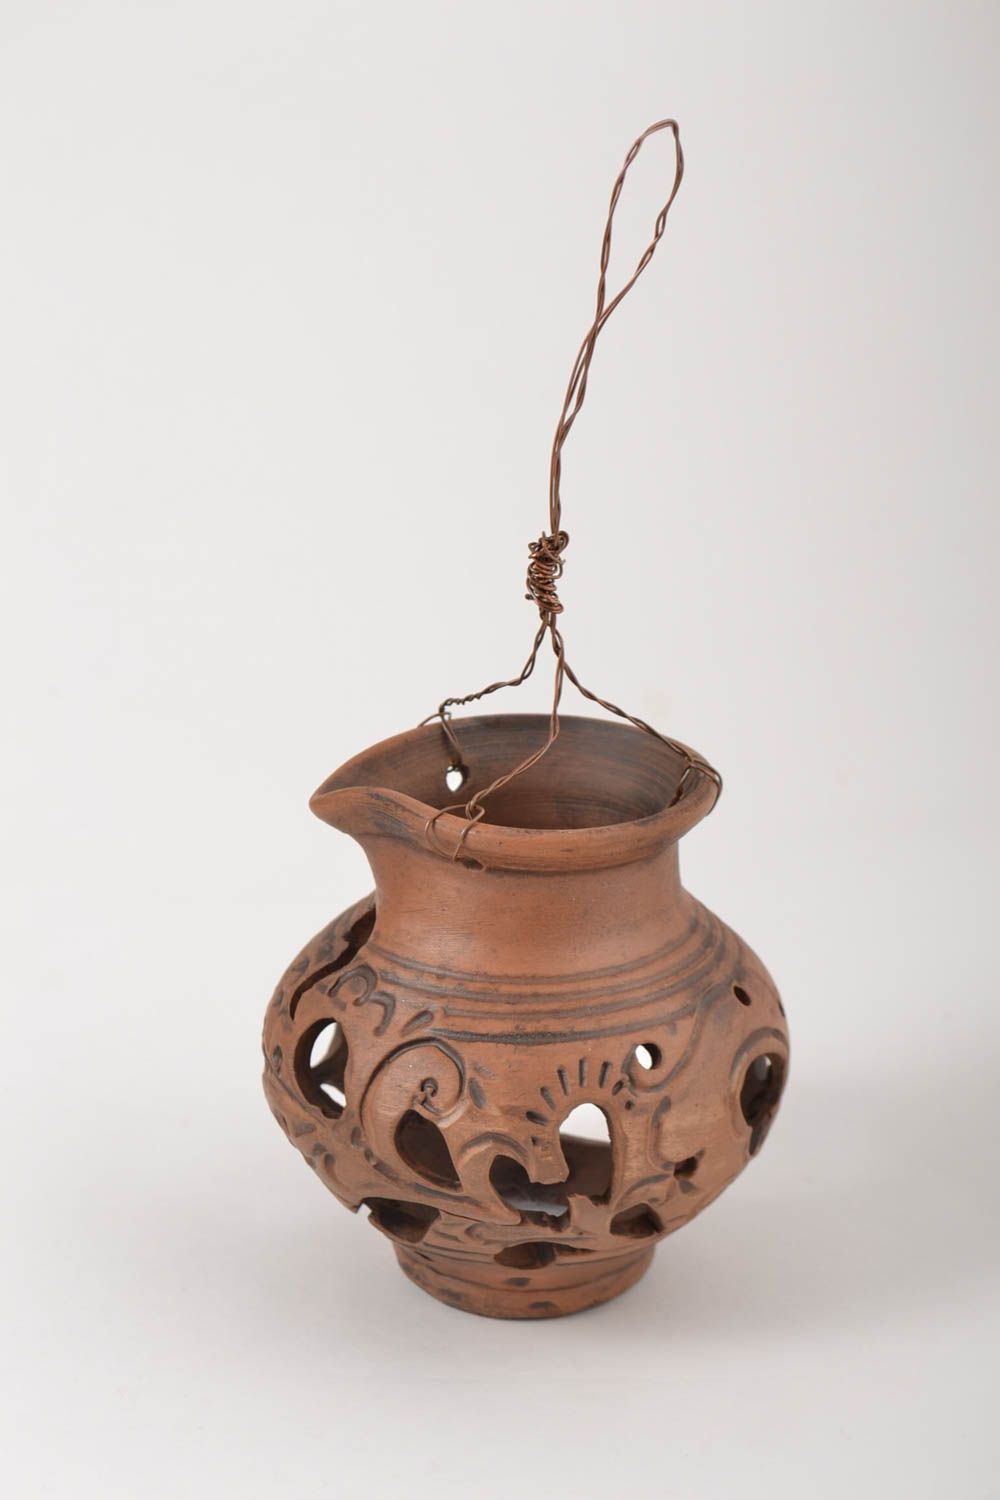 Керамический светильник подарок ручной работы подсвечник из глины на проволоке фото 3